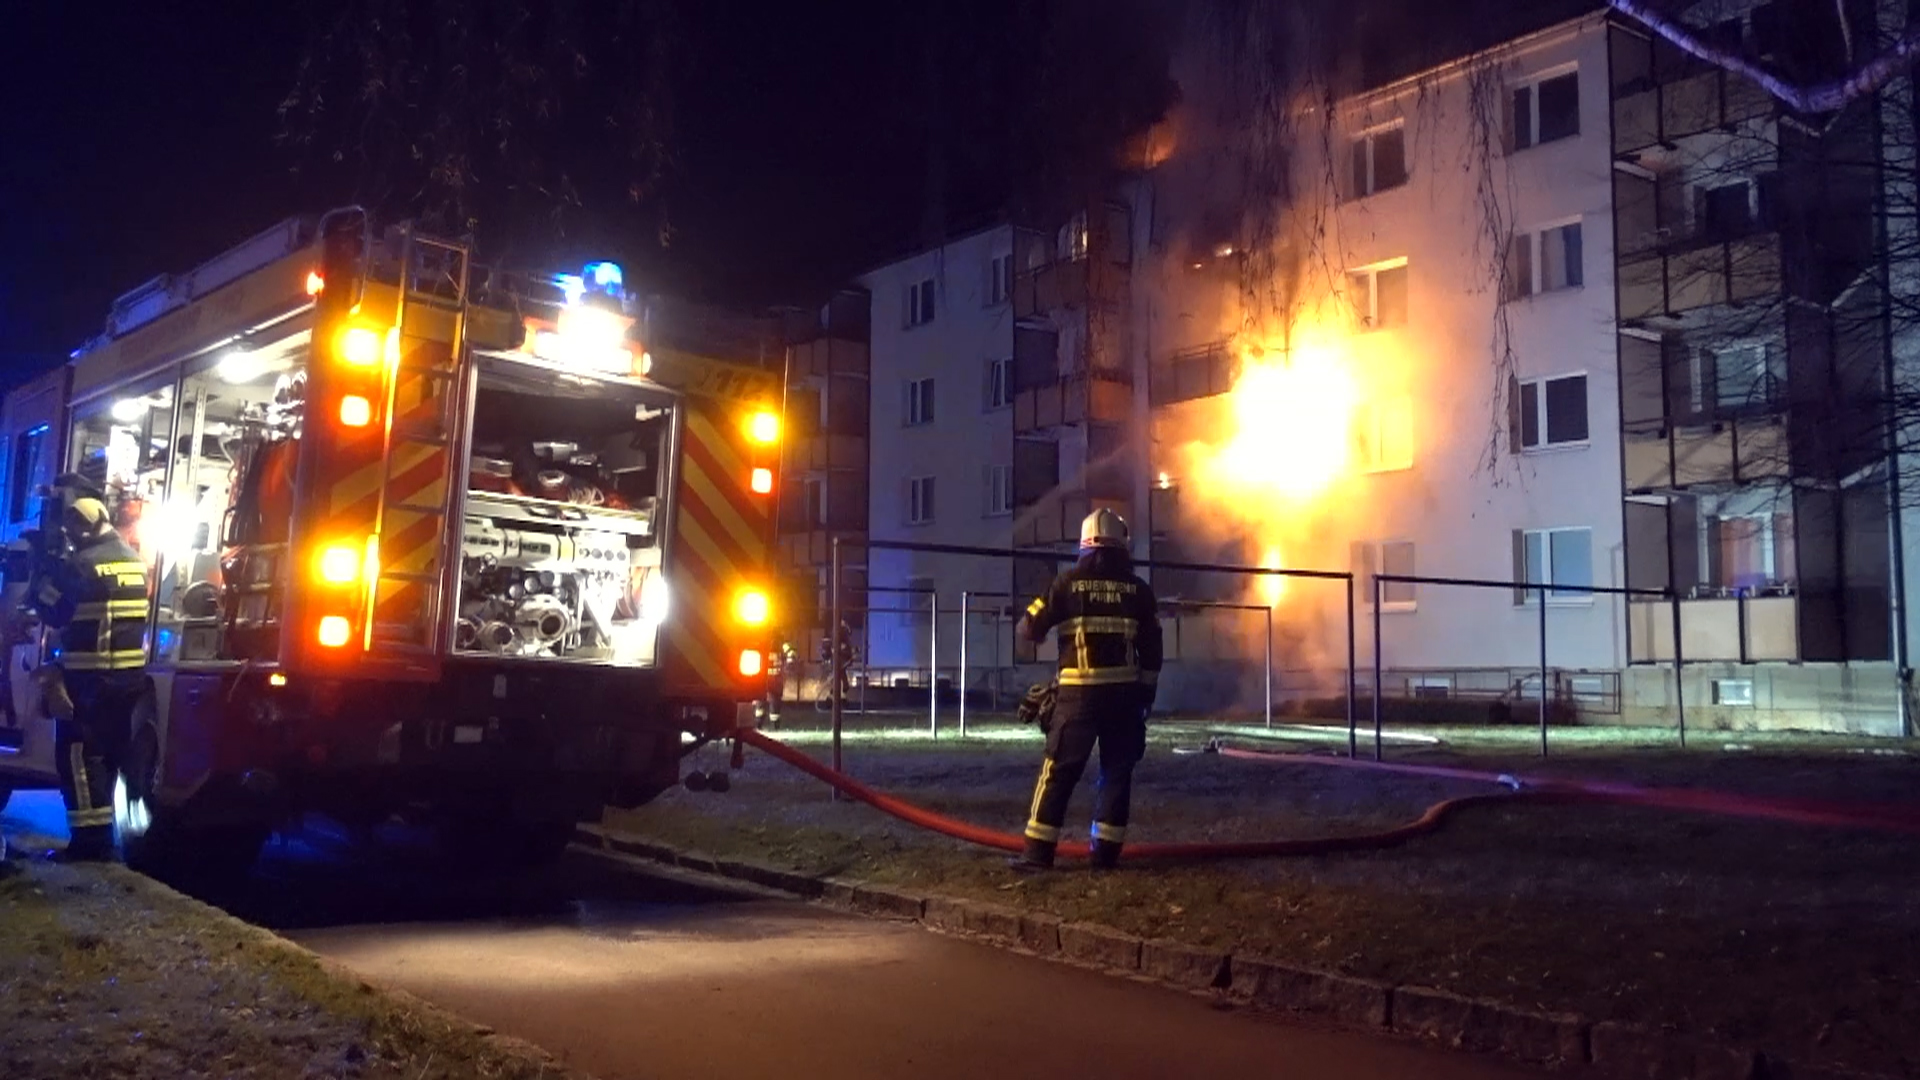 Viele Einsätze für die Feuerwehr Pirna